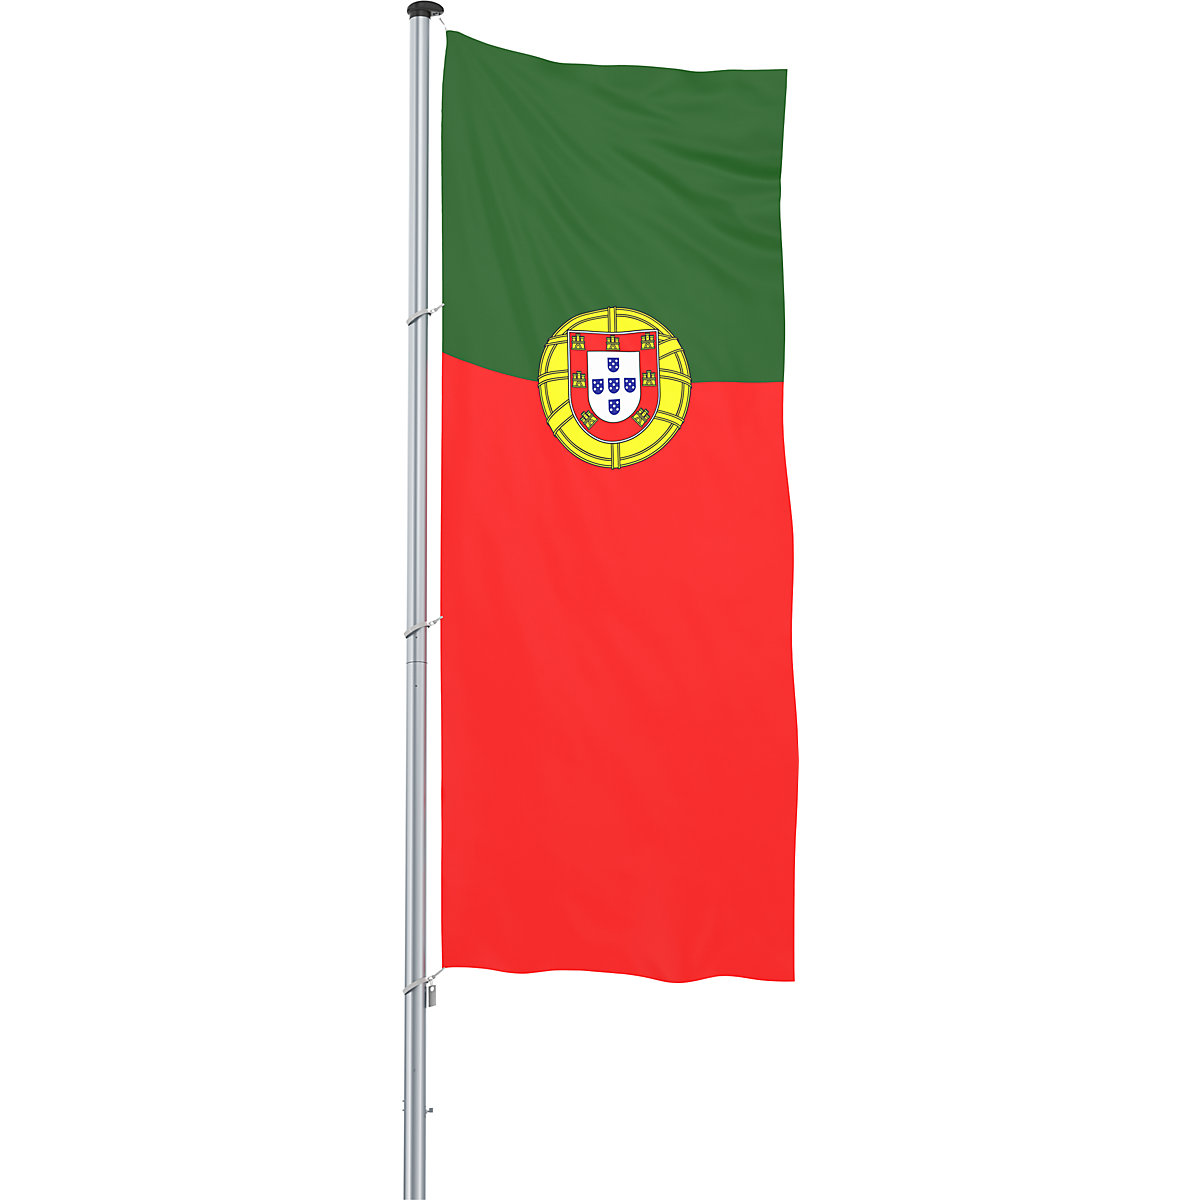 Bandiera/Bandiera nazionale – Mannus, formato 1,2 x 3 m, Portogallo-6